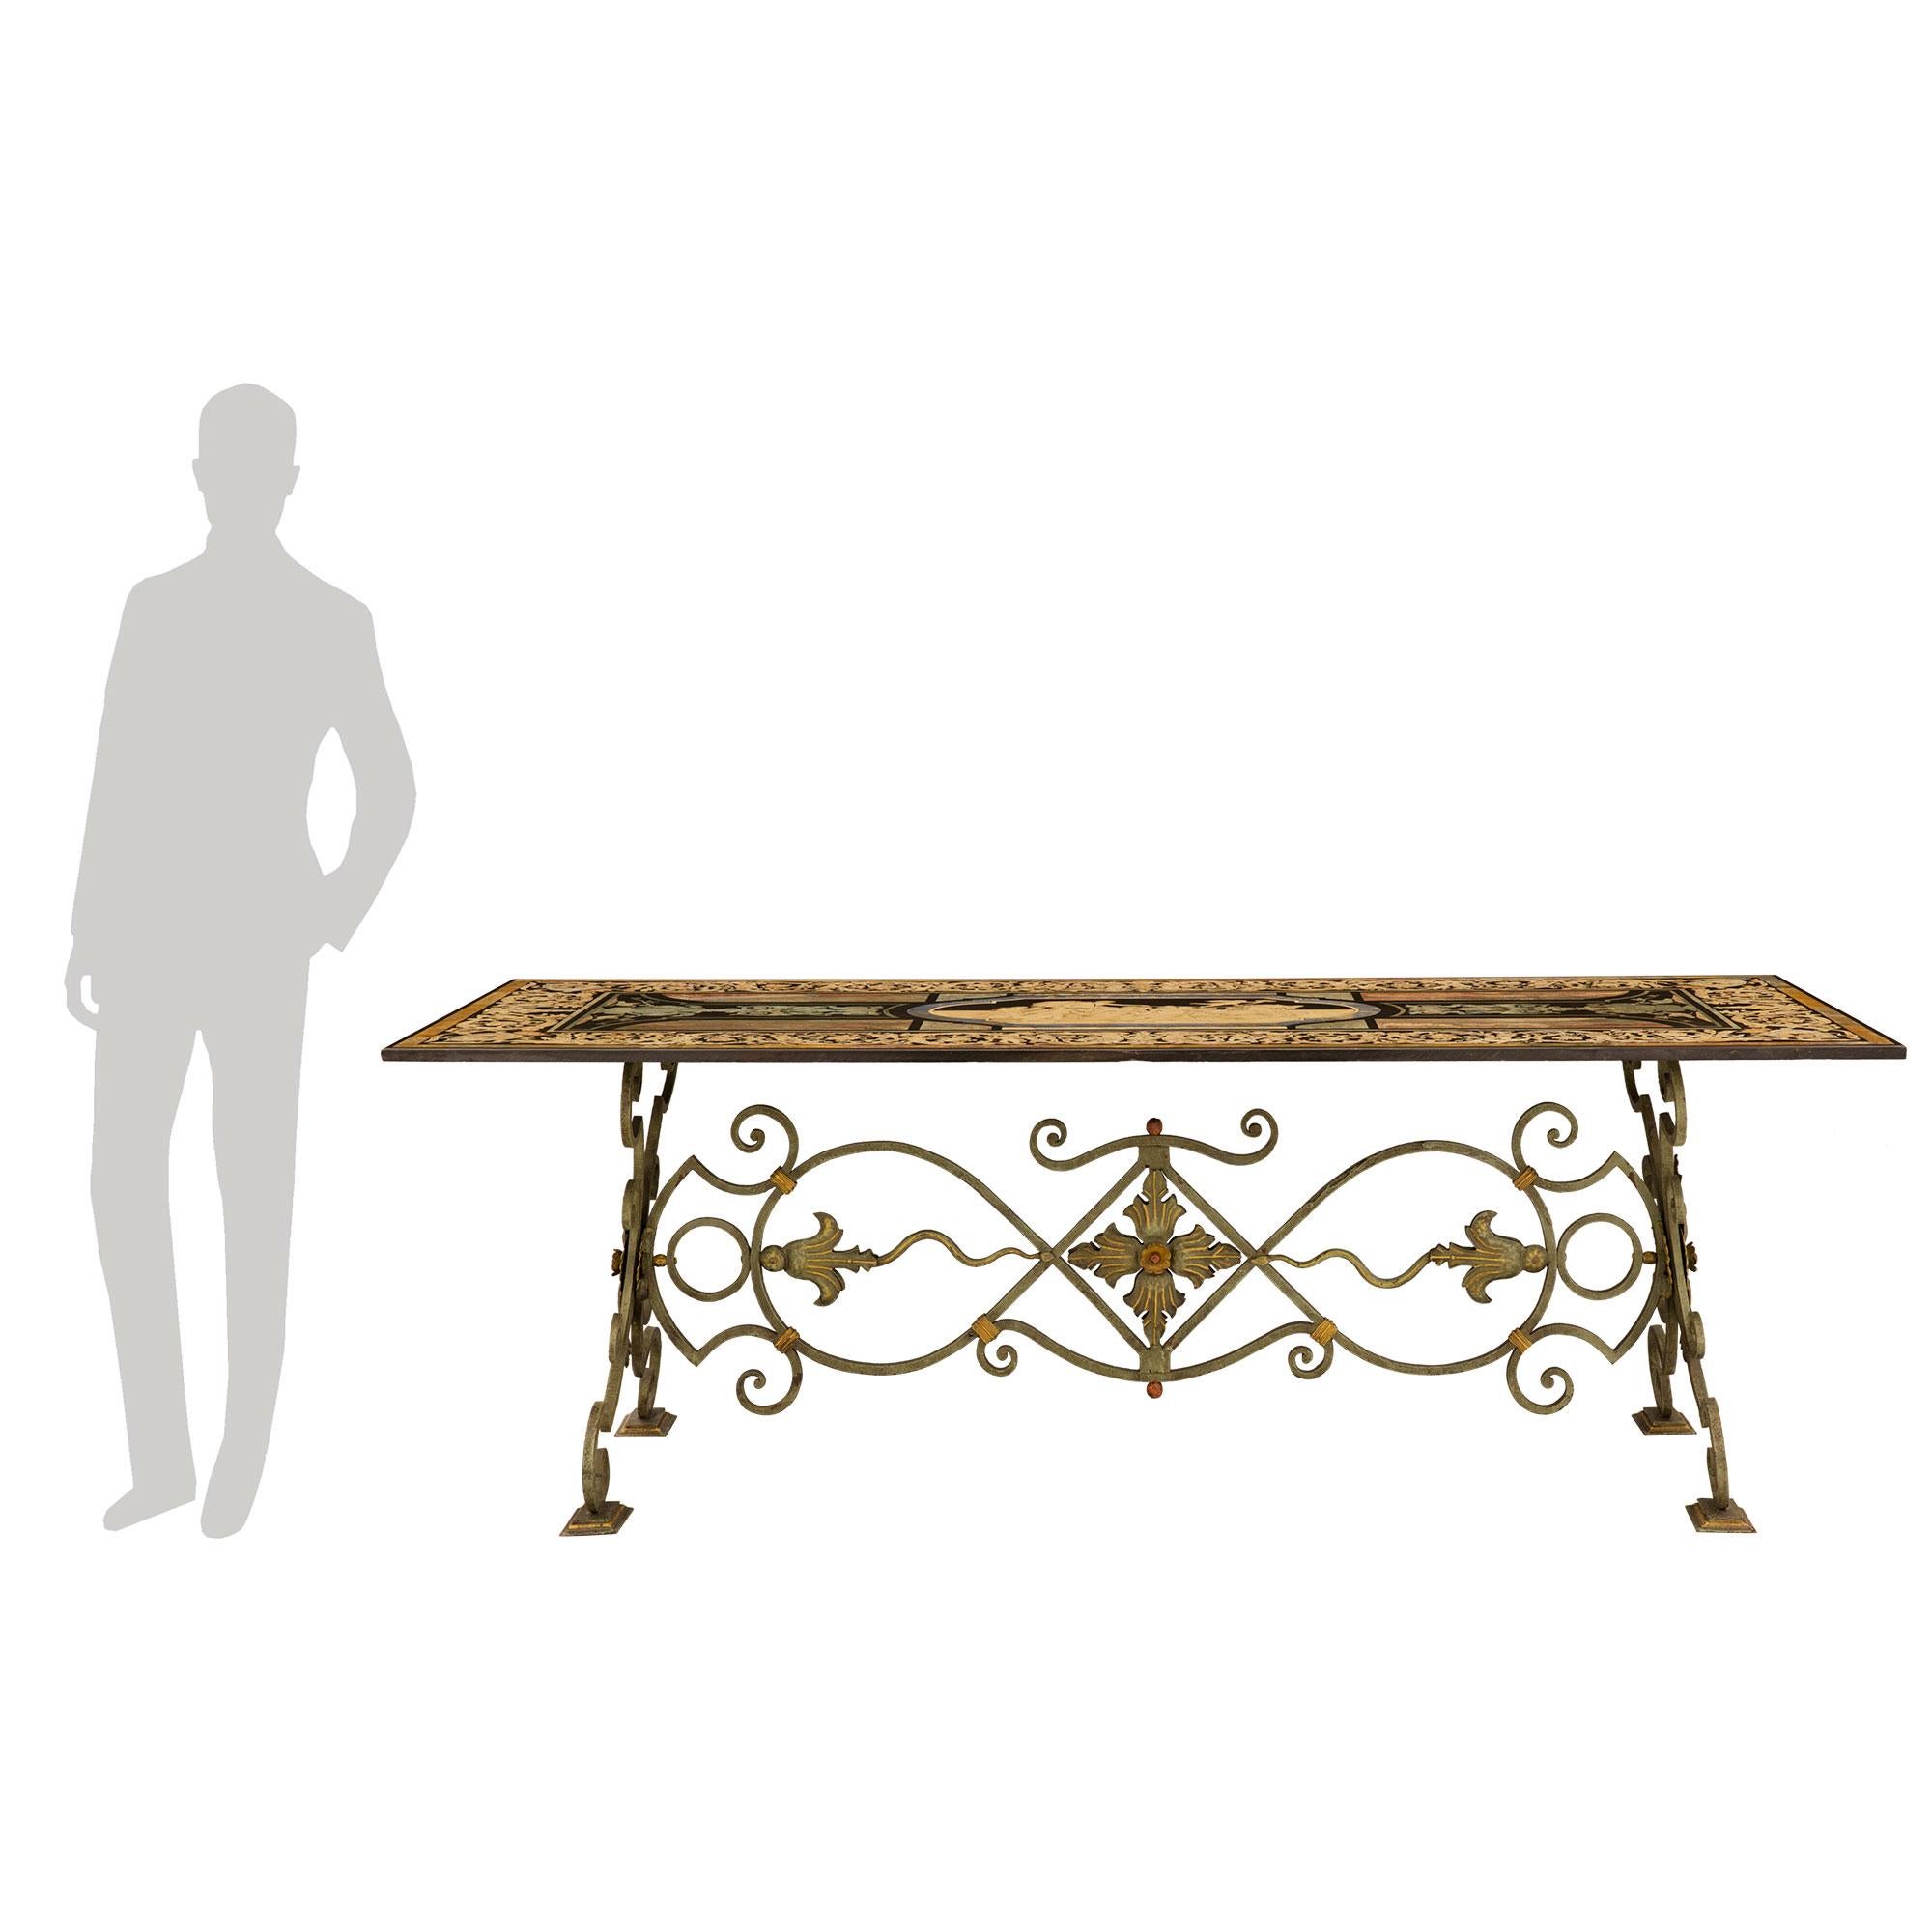 Superbe table de salle à manger italienne du XIXe siècle en fer forgé patiné vert-de-gris, doré et Scagliola. La table est soutenue par une magnifique base en fer forgé patiné vert-de-gris avec des accents dorés, des mouvements à volutes frappants